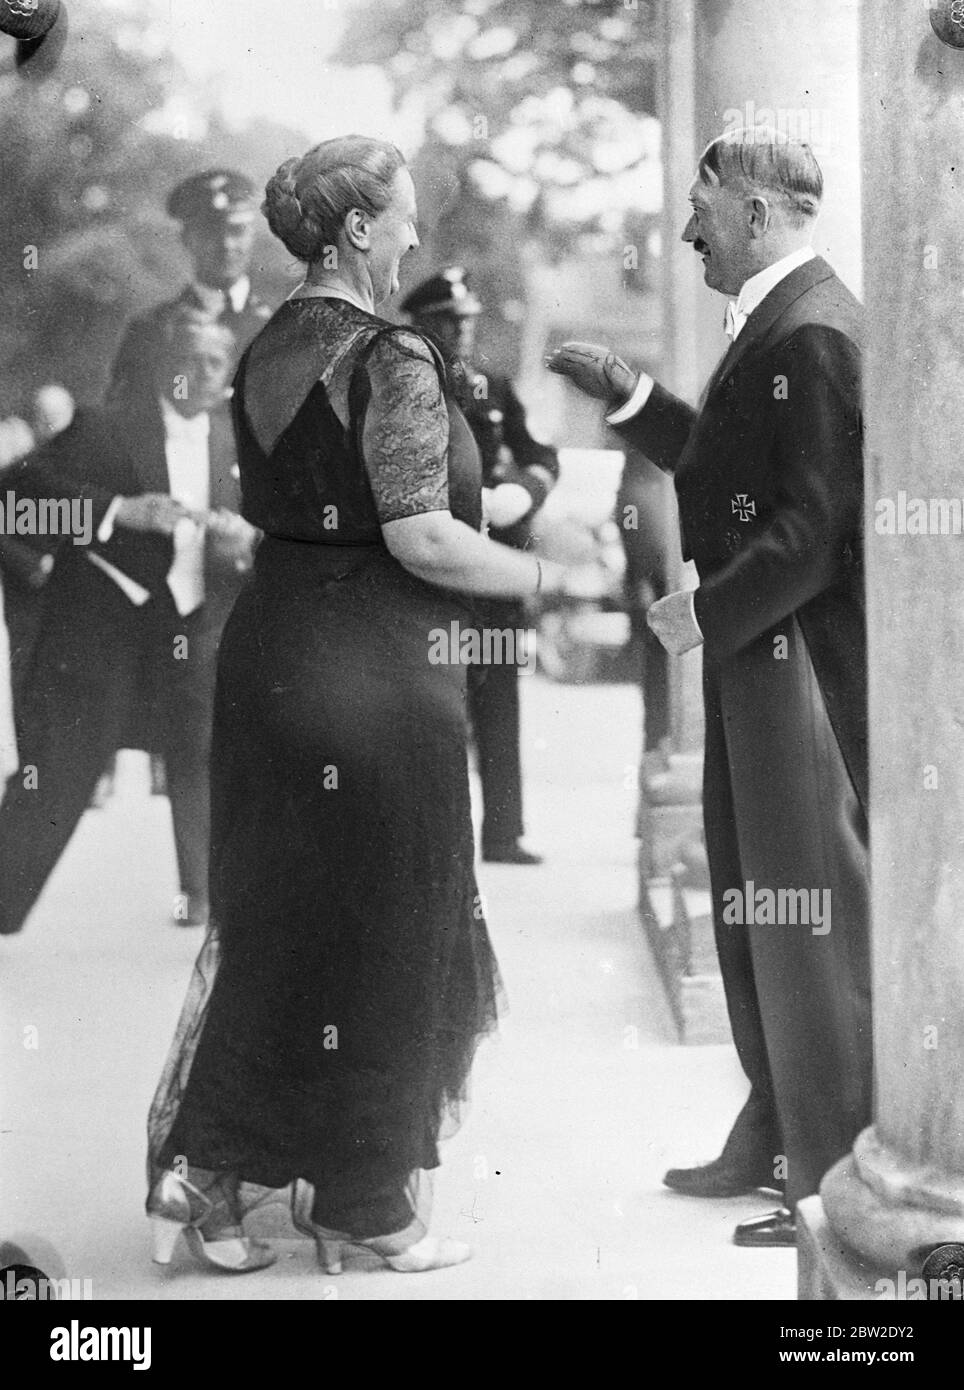 Bundeskanzler Hitler versuchte, Fotografen am Fotografieren zu hindern, als er Frau Winnifred Wagner, mit deren Namen sein eigener immer wieder romantisch verknüpft wurde, zu Beginn der Wagner-Festspiele in Bayreuth in Bayern begrüßte. 26 Juli 1937 Stockfoto